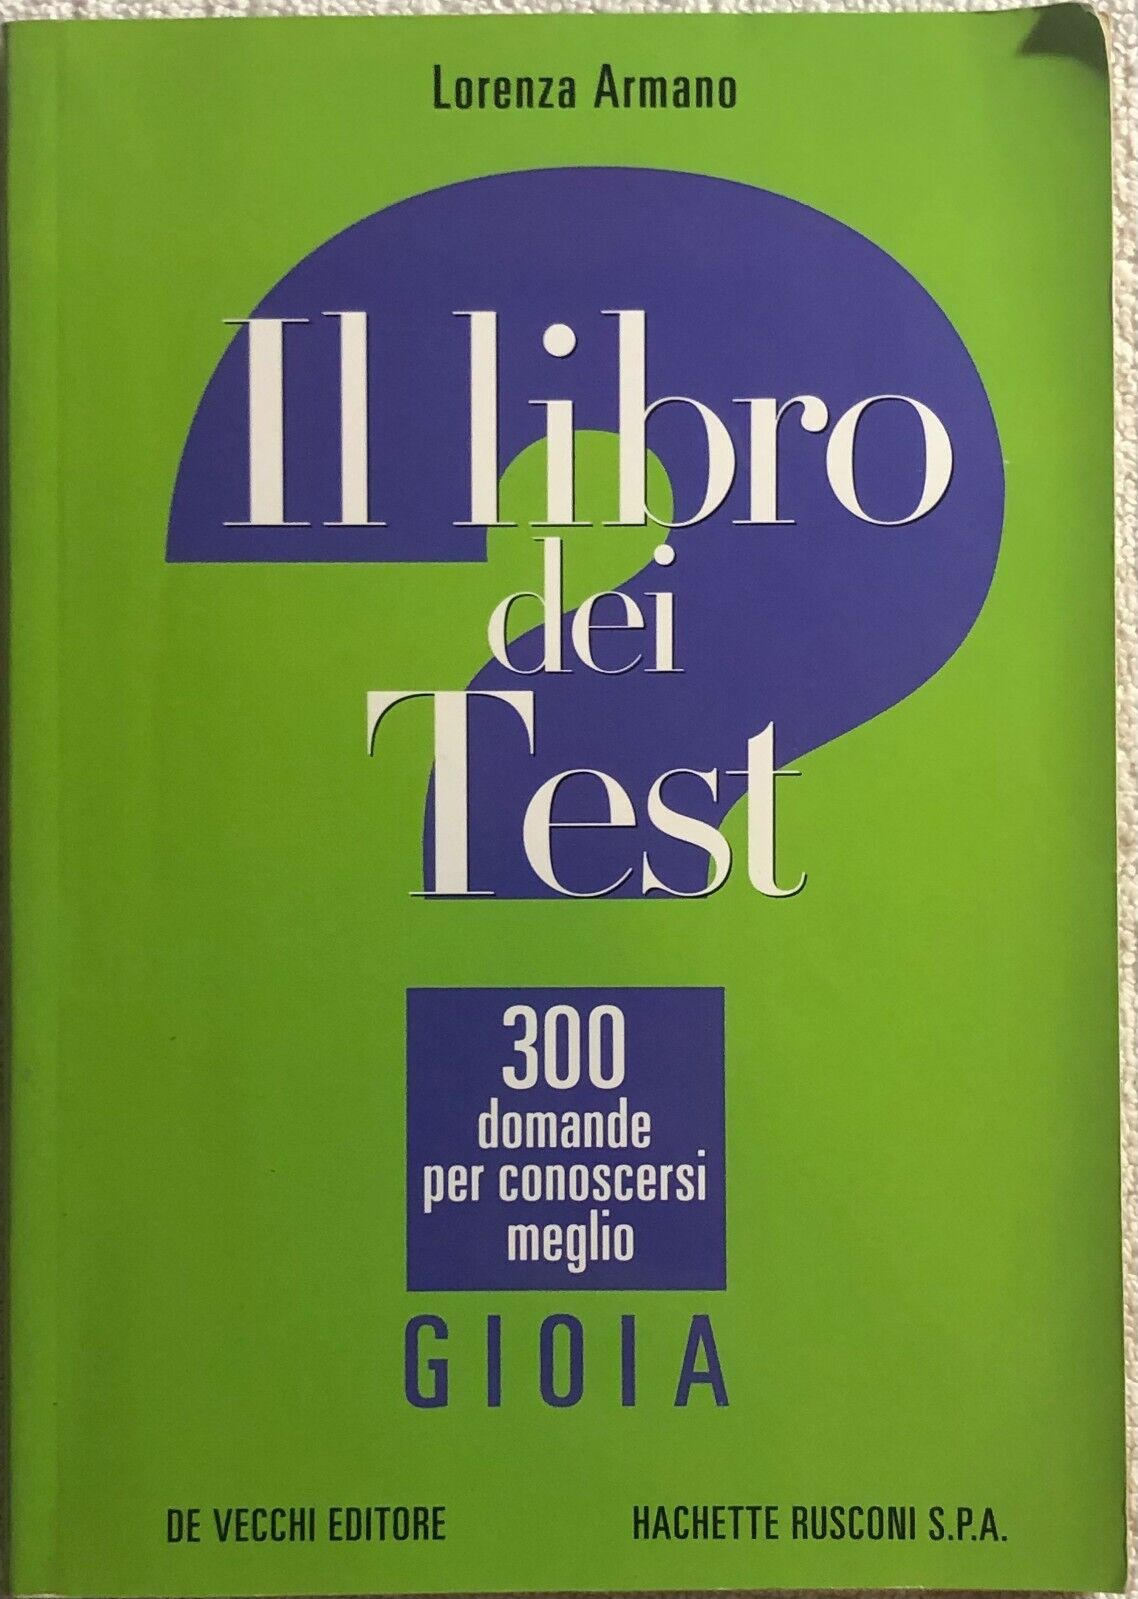 Il libro dei test: 300 domande per conoscersi meglio - Gioia di Lorenza Armano, 